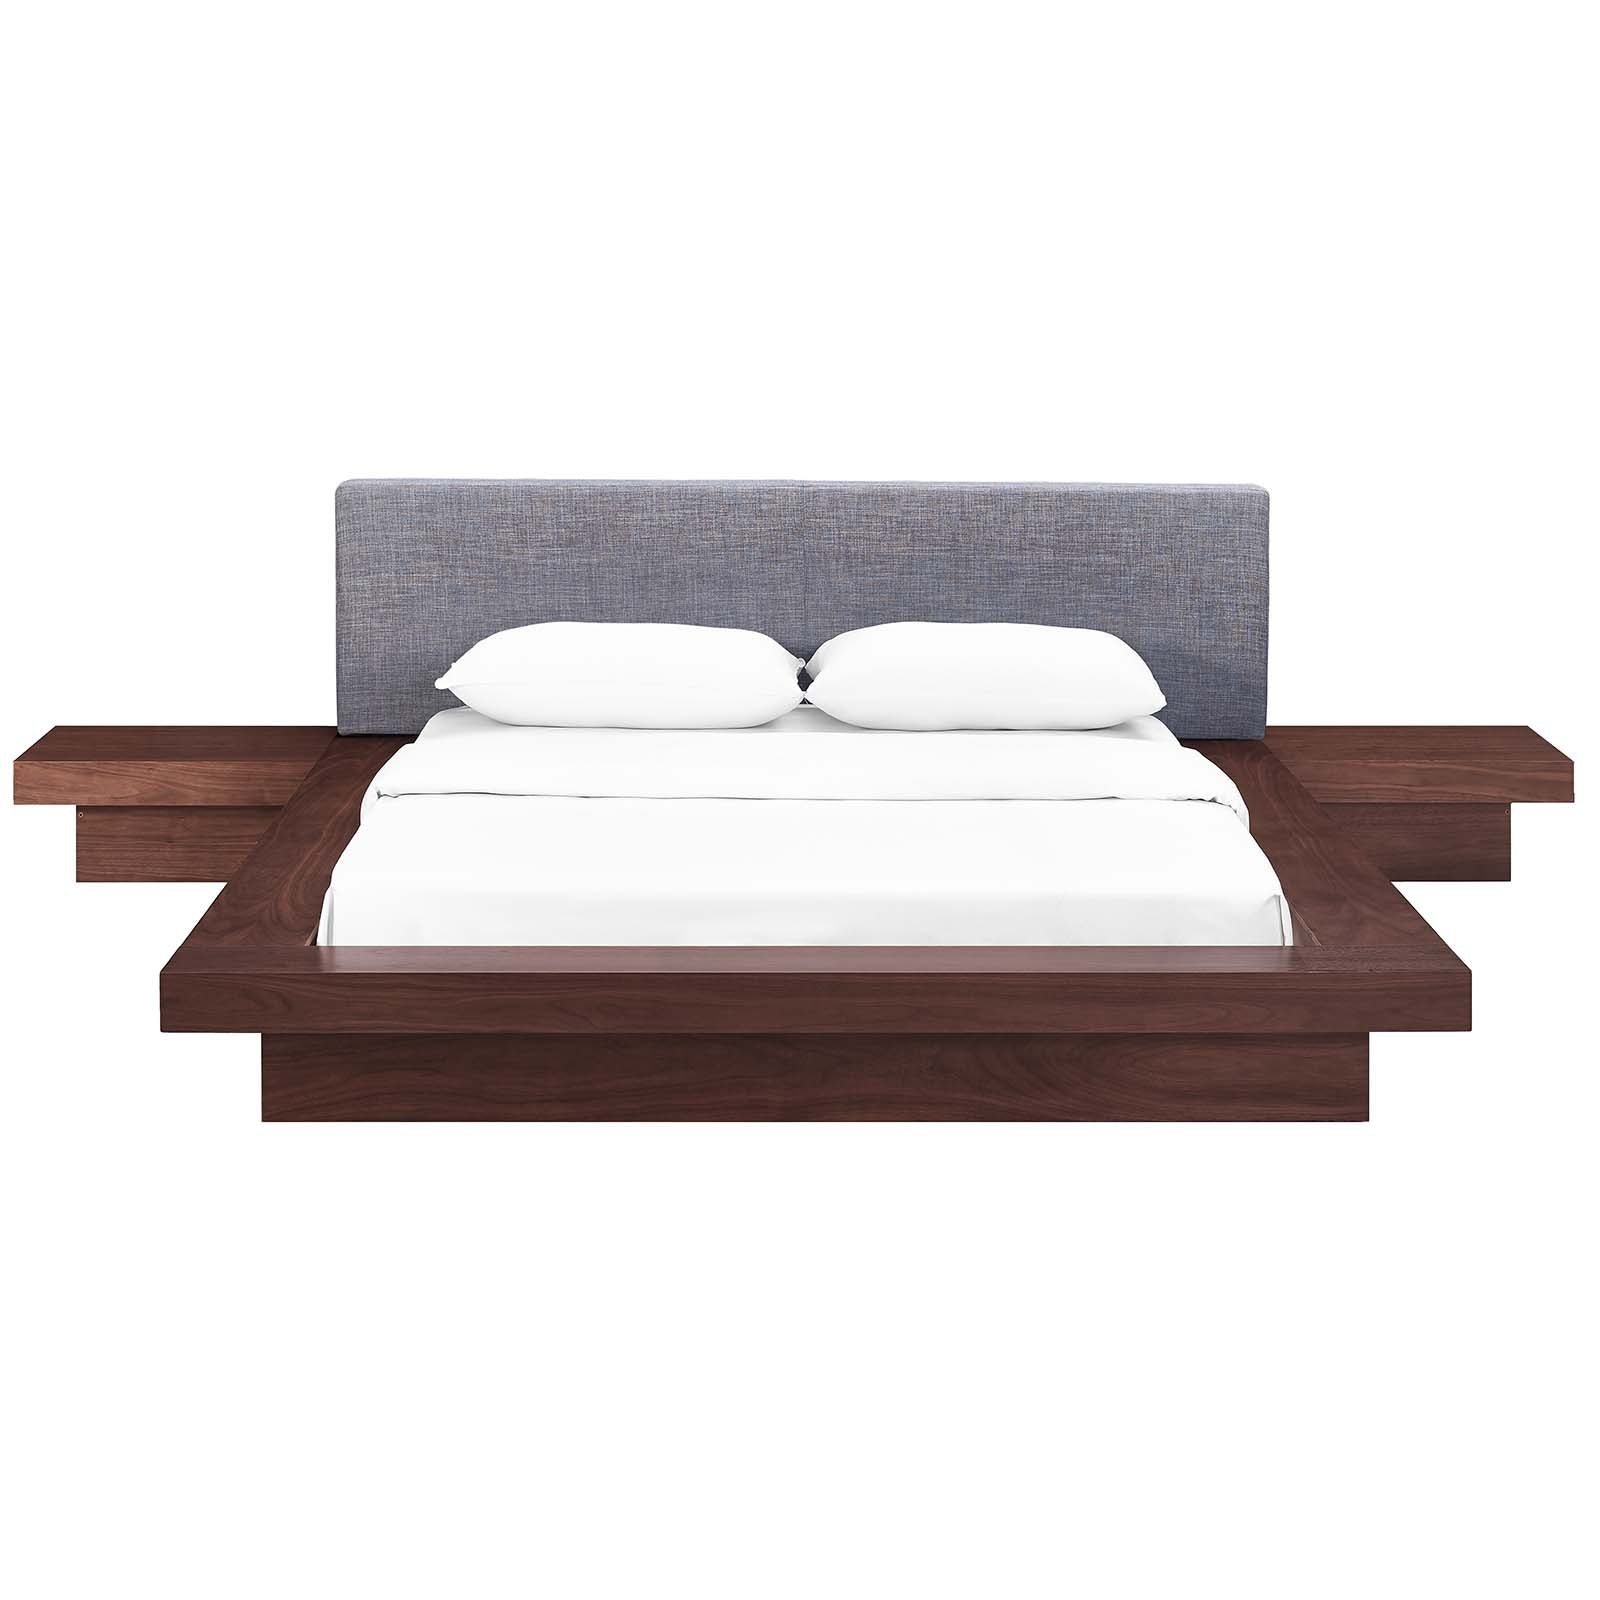 Modway Bedroom Sets - Freja 3 Piece Queen Fabric Bedroom Set Walnut Gray